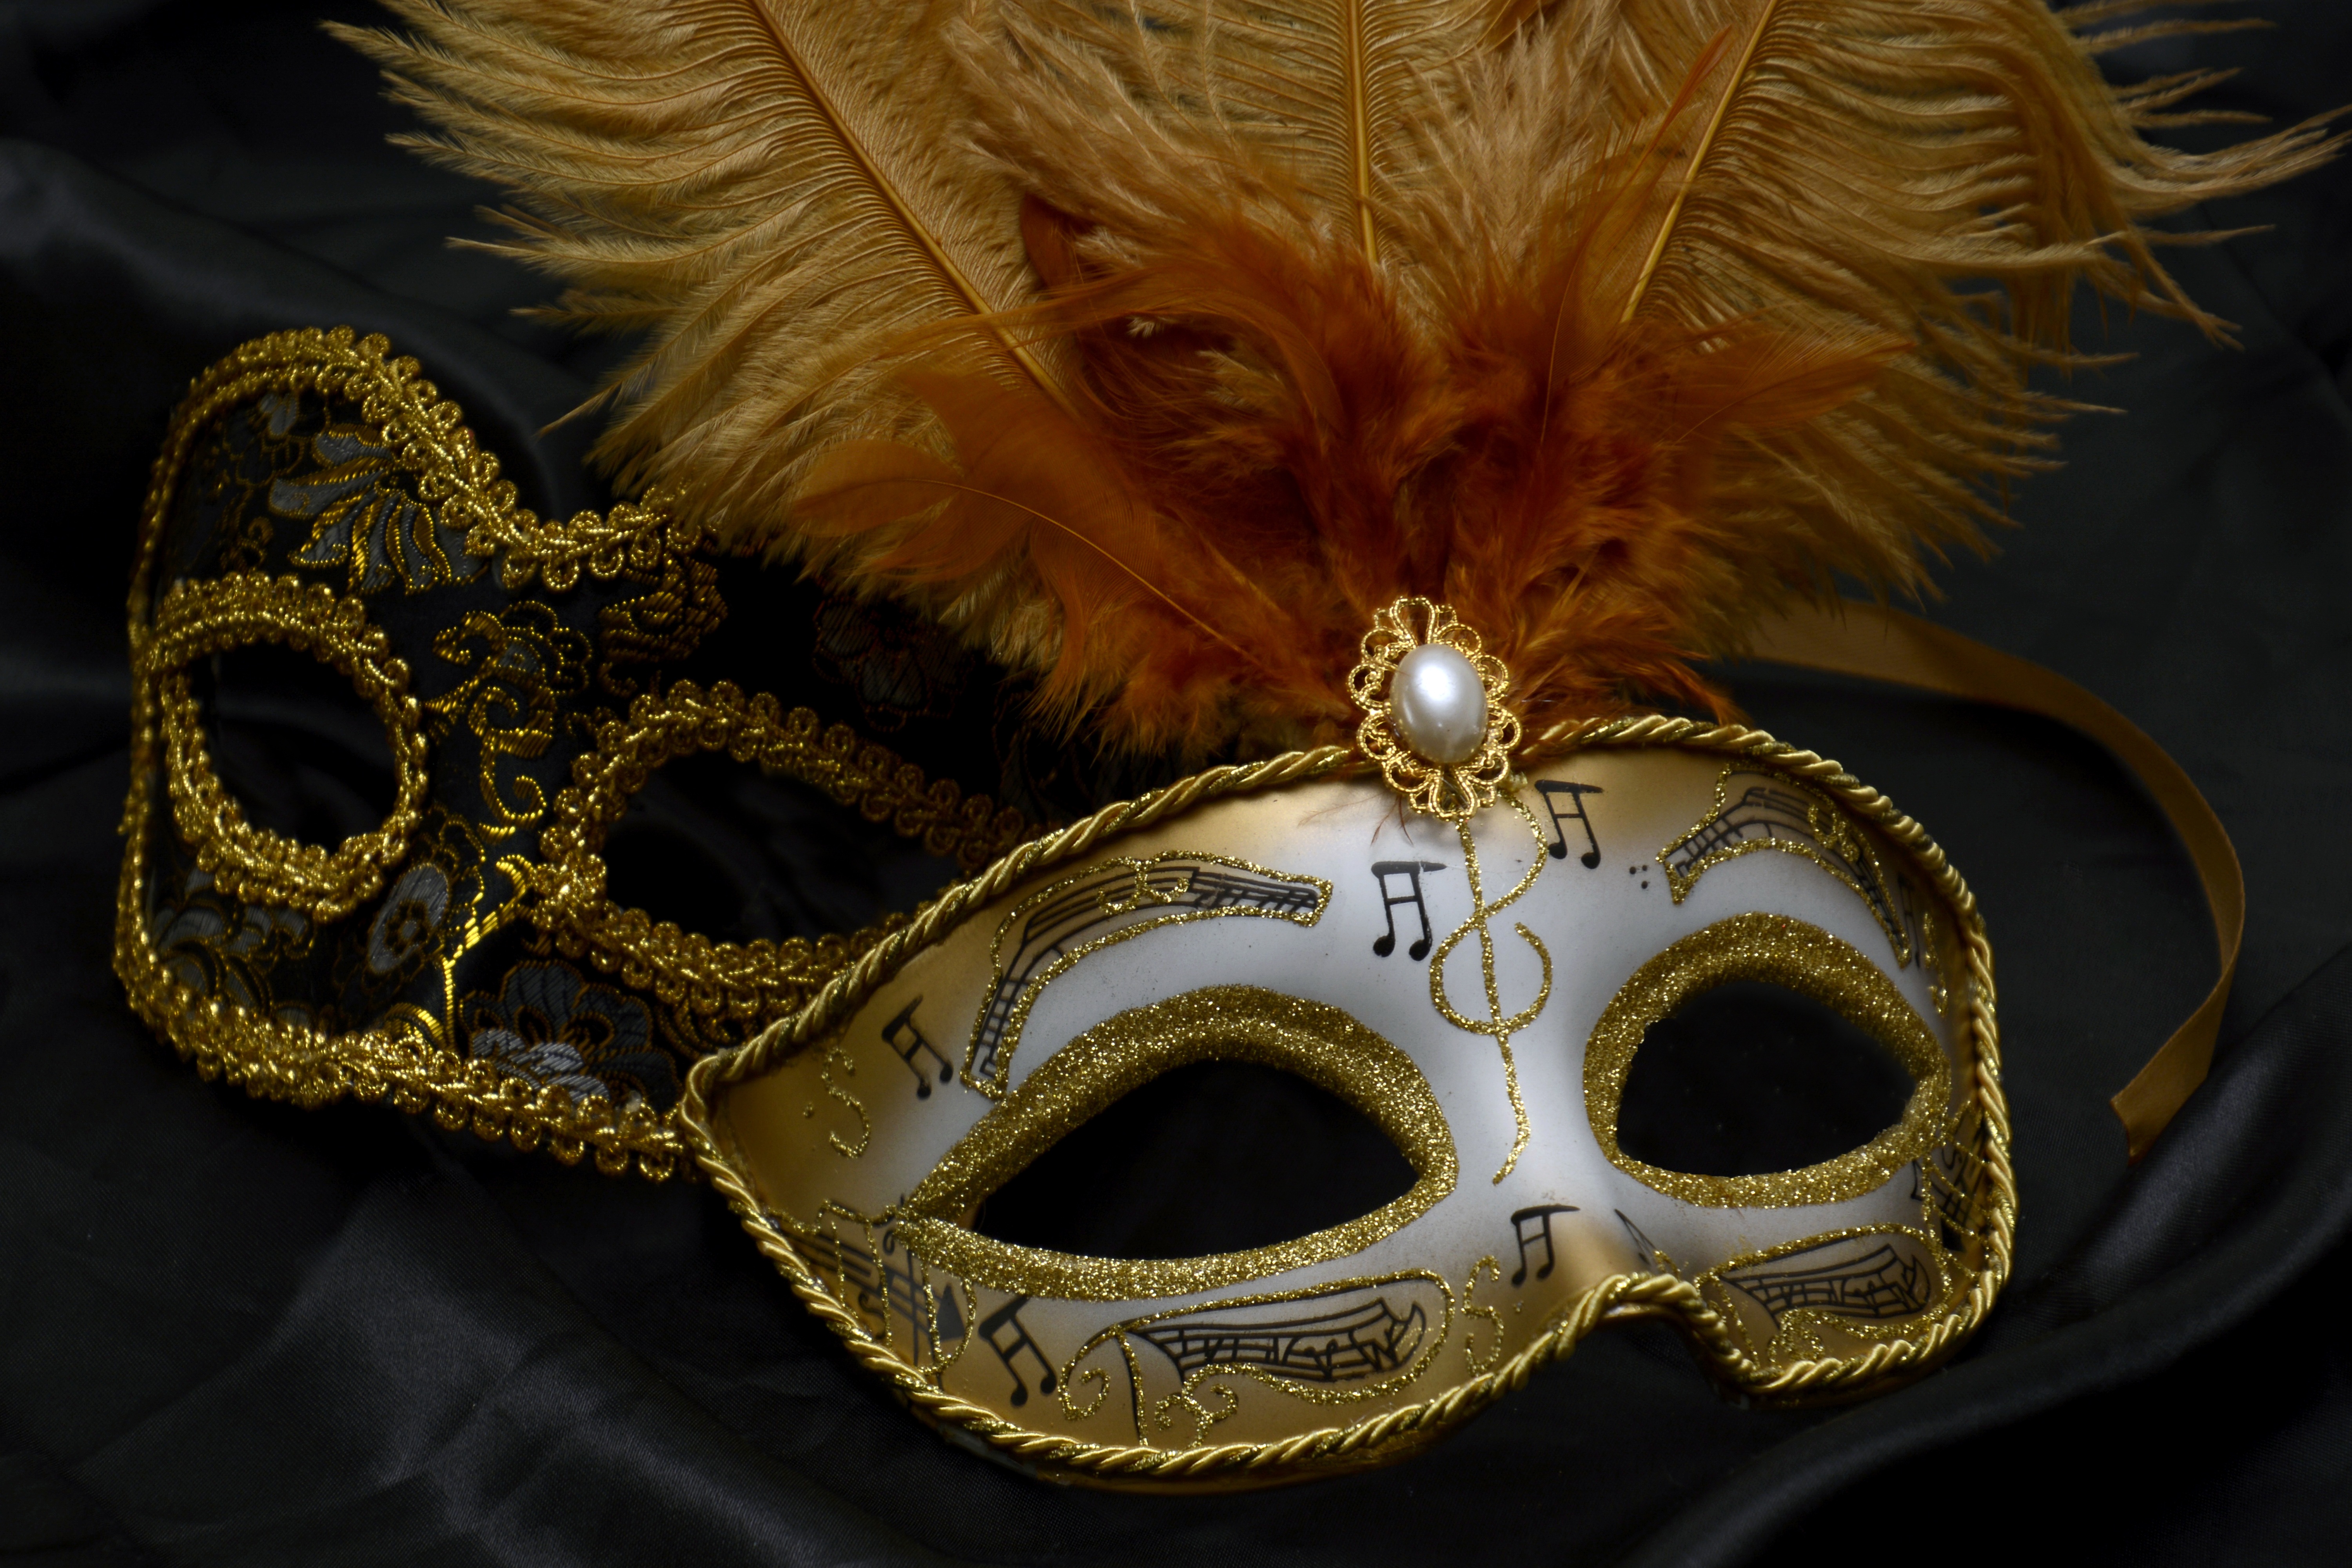 Carnival of Venice: Mysterious masks make the celebration